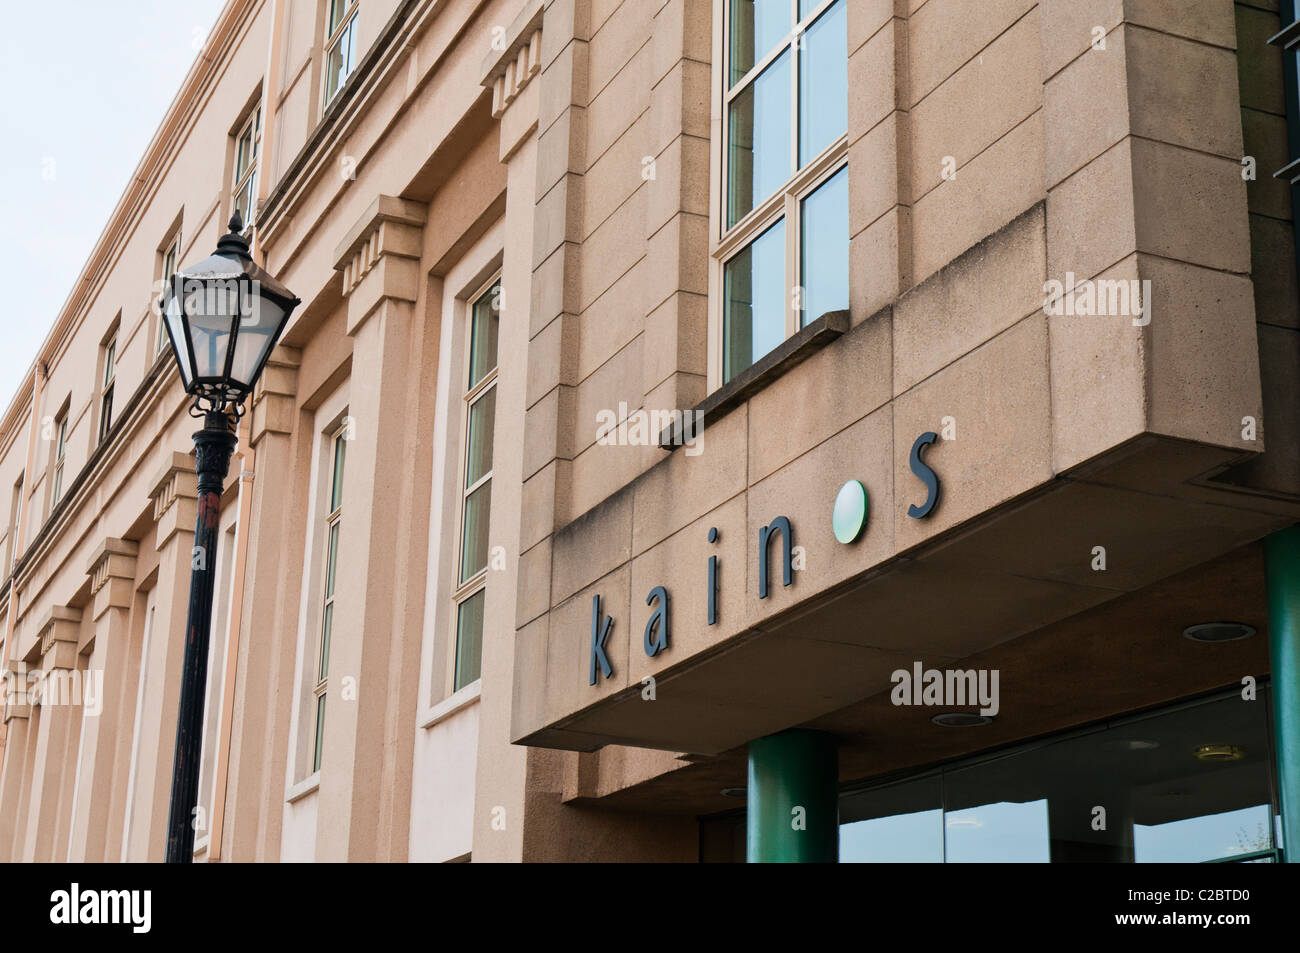 Kainos, una empresa especializada en Irlanda del Norte EDRMS, WCM y soluciones de voz Foto de stock